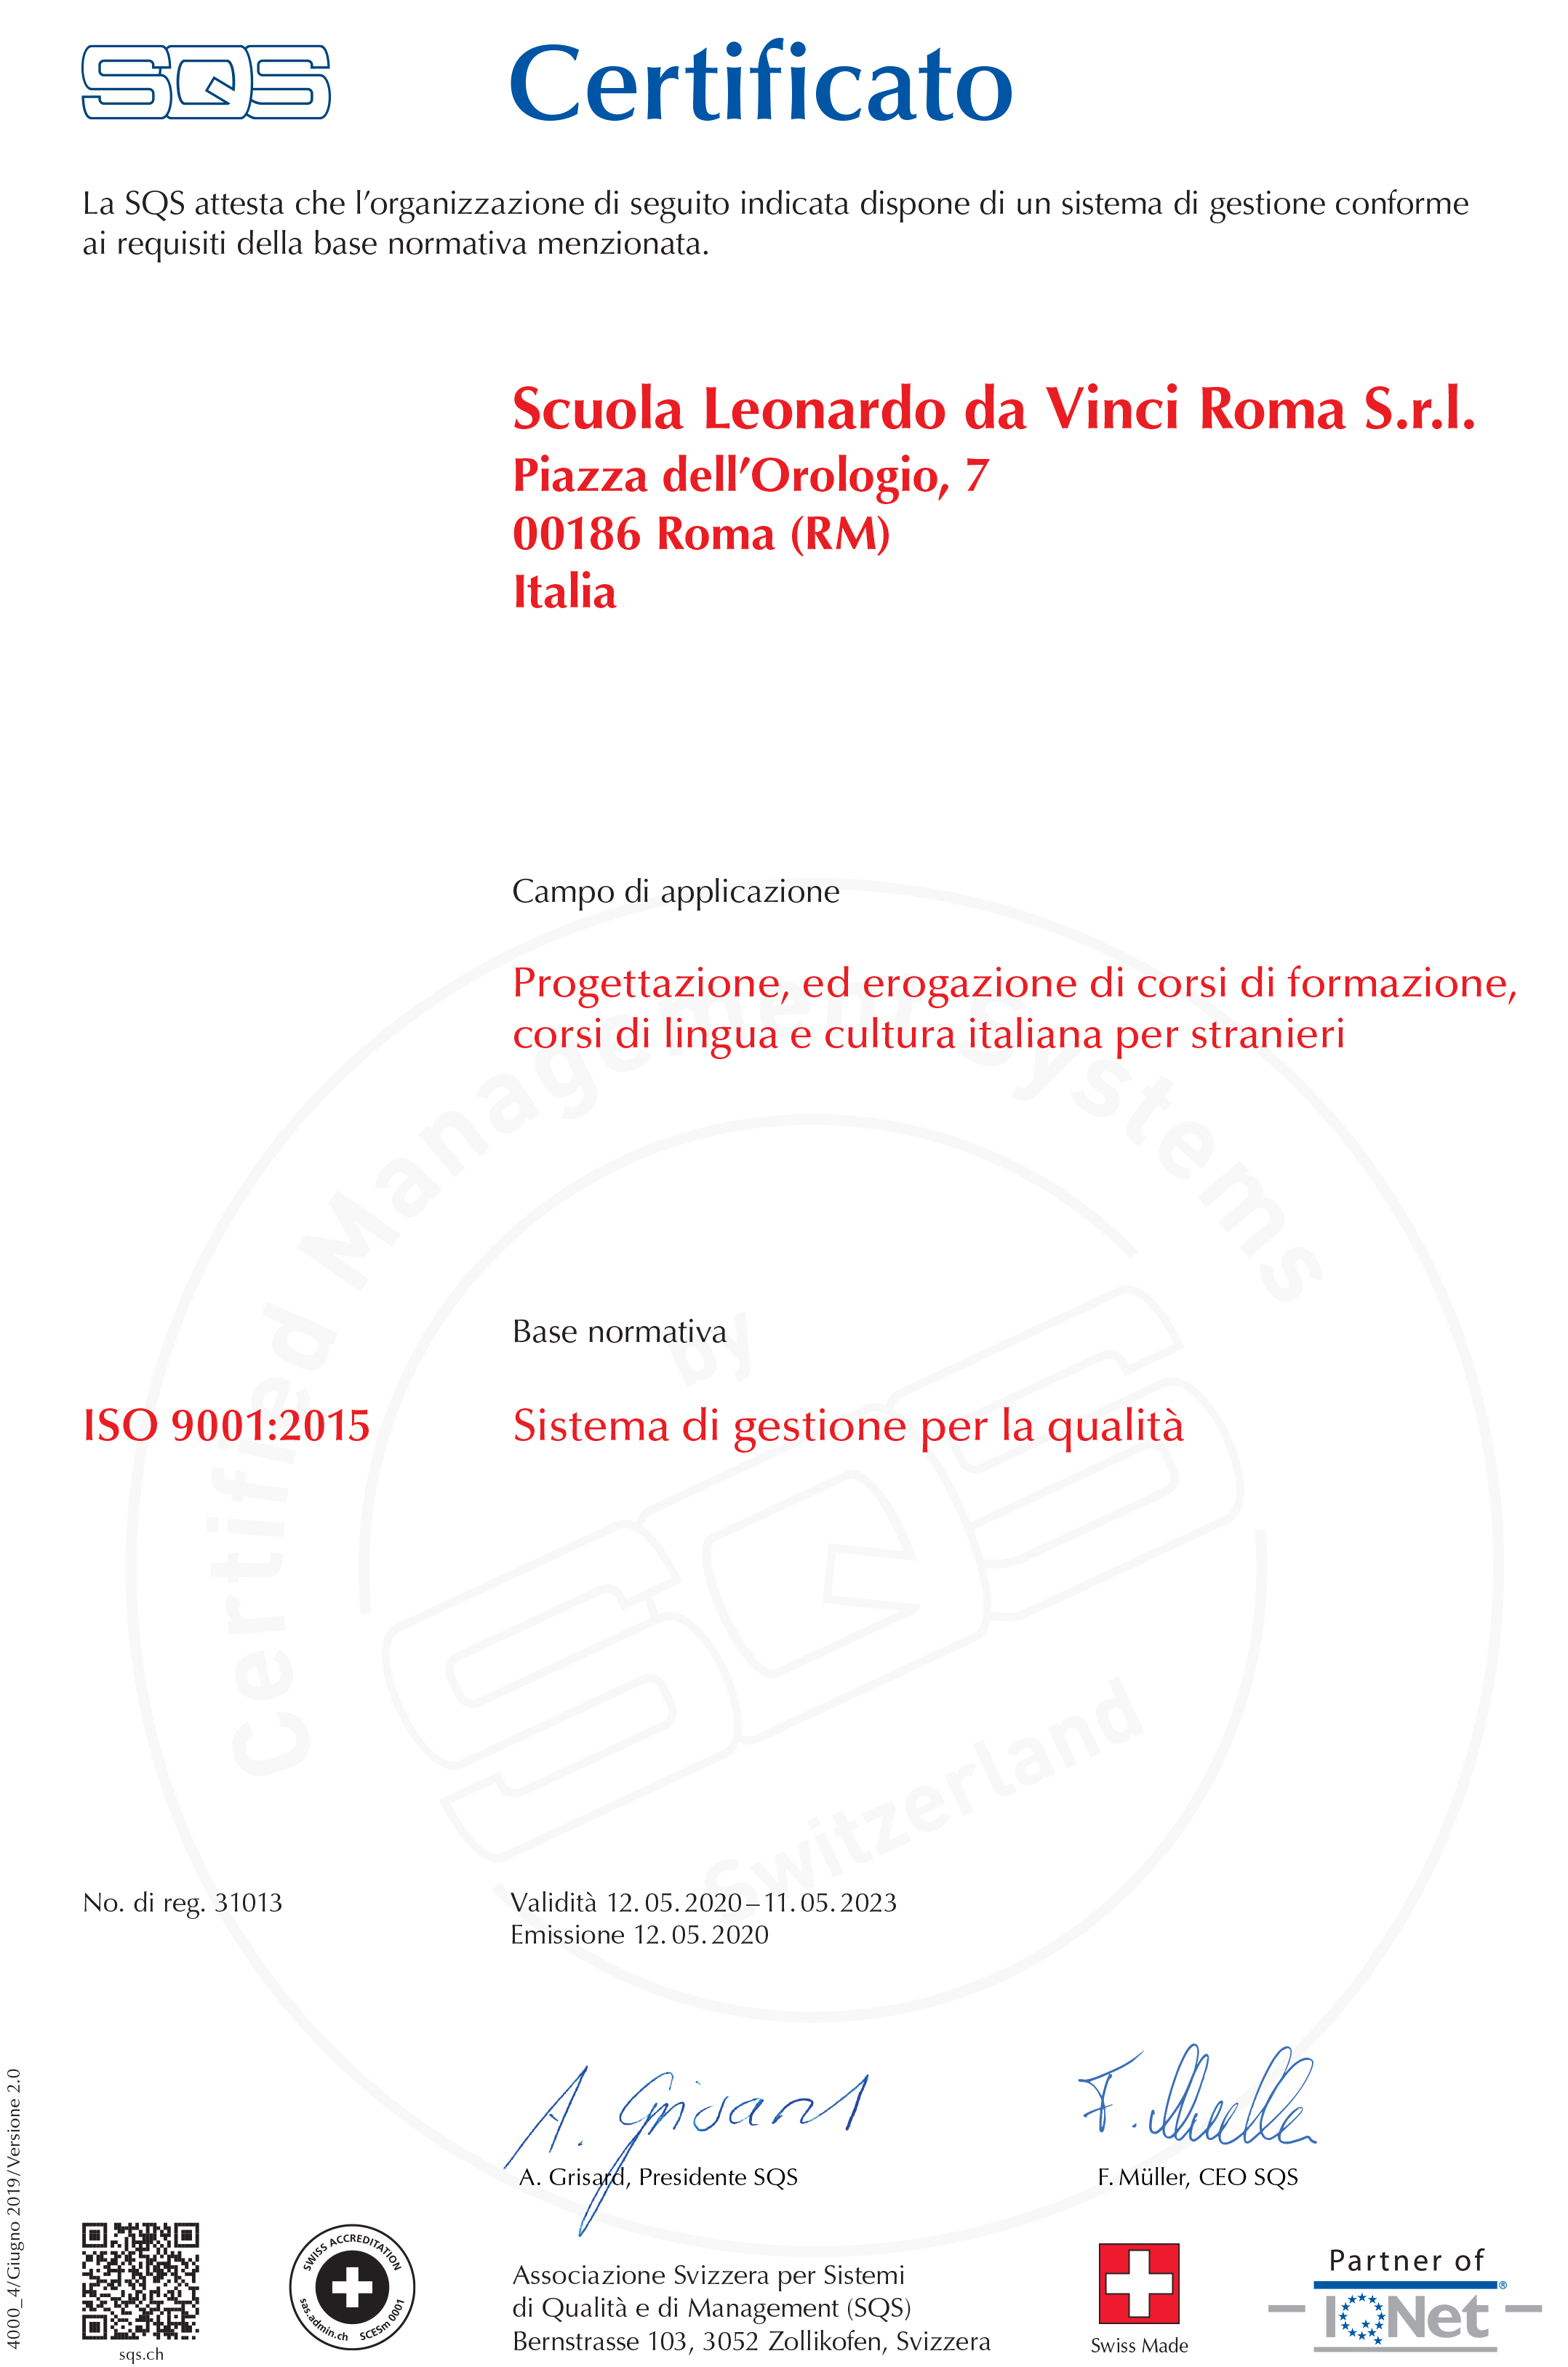 La nostra scuola italiana a Roma è certificata per soddisfare ISO 9001: 2015, lo standard internazionale riconosciuto per i sistemi di gestione della qualità